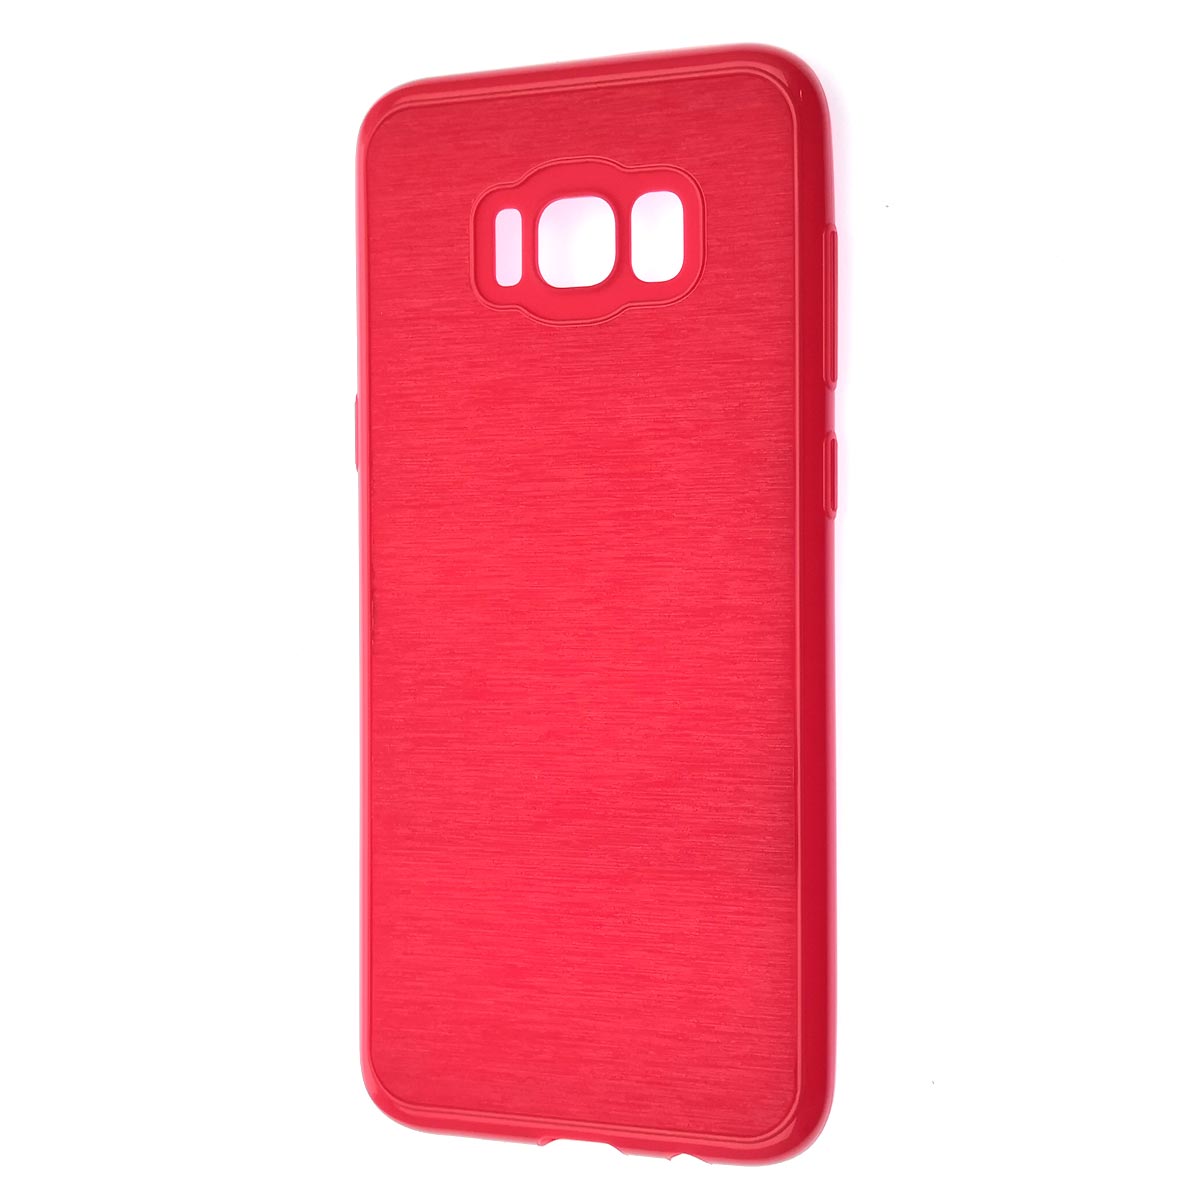 Чехол накладка для SAMSUNG Galaxy S8 Plus (SM-G955), силикон, текстура, цвет красный